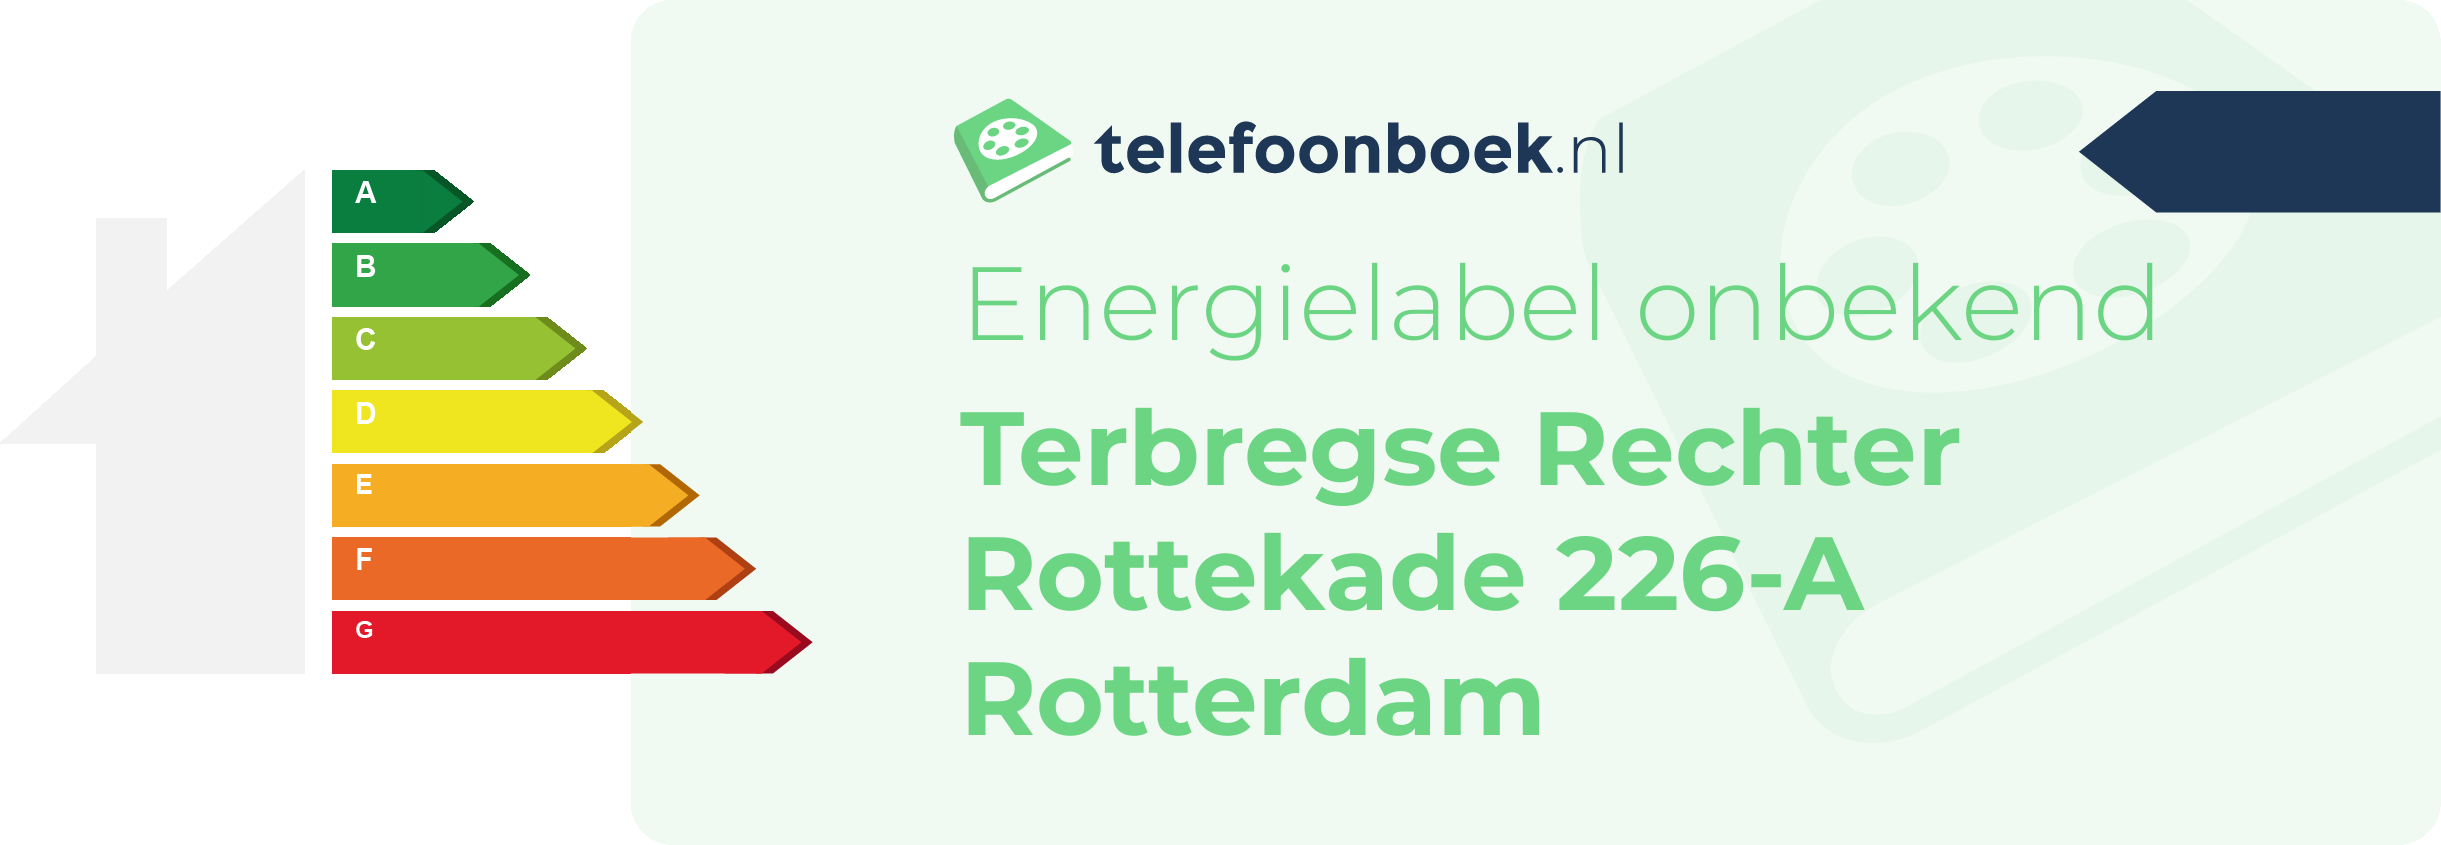 Energielabel Terbregse Rechter Rottekade 226-A Rotterdam